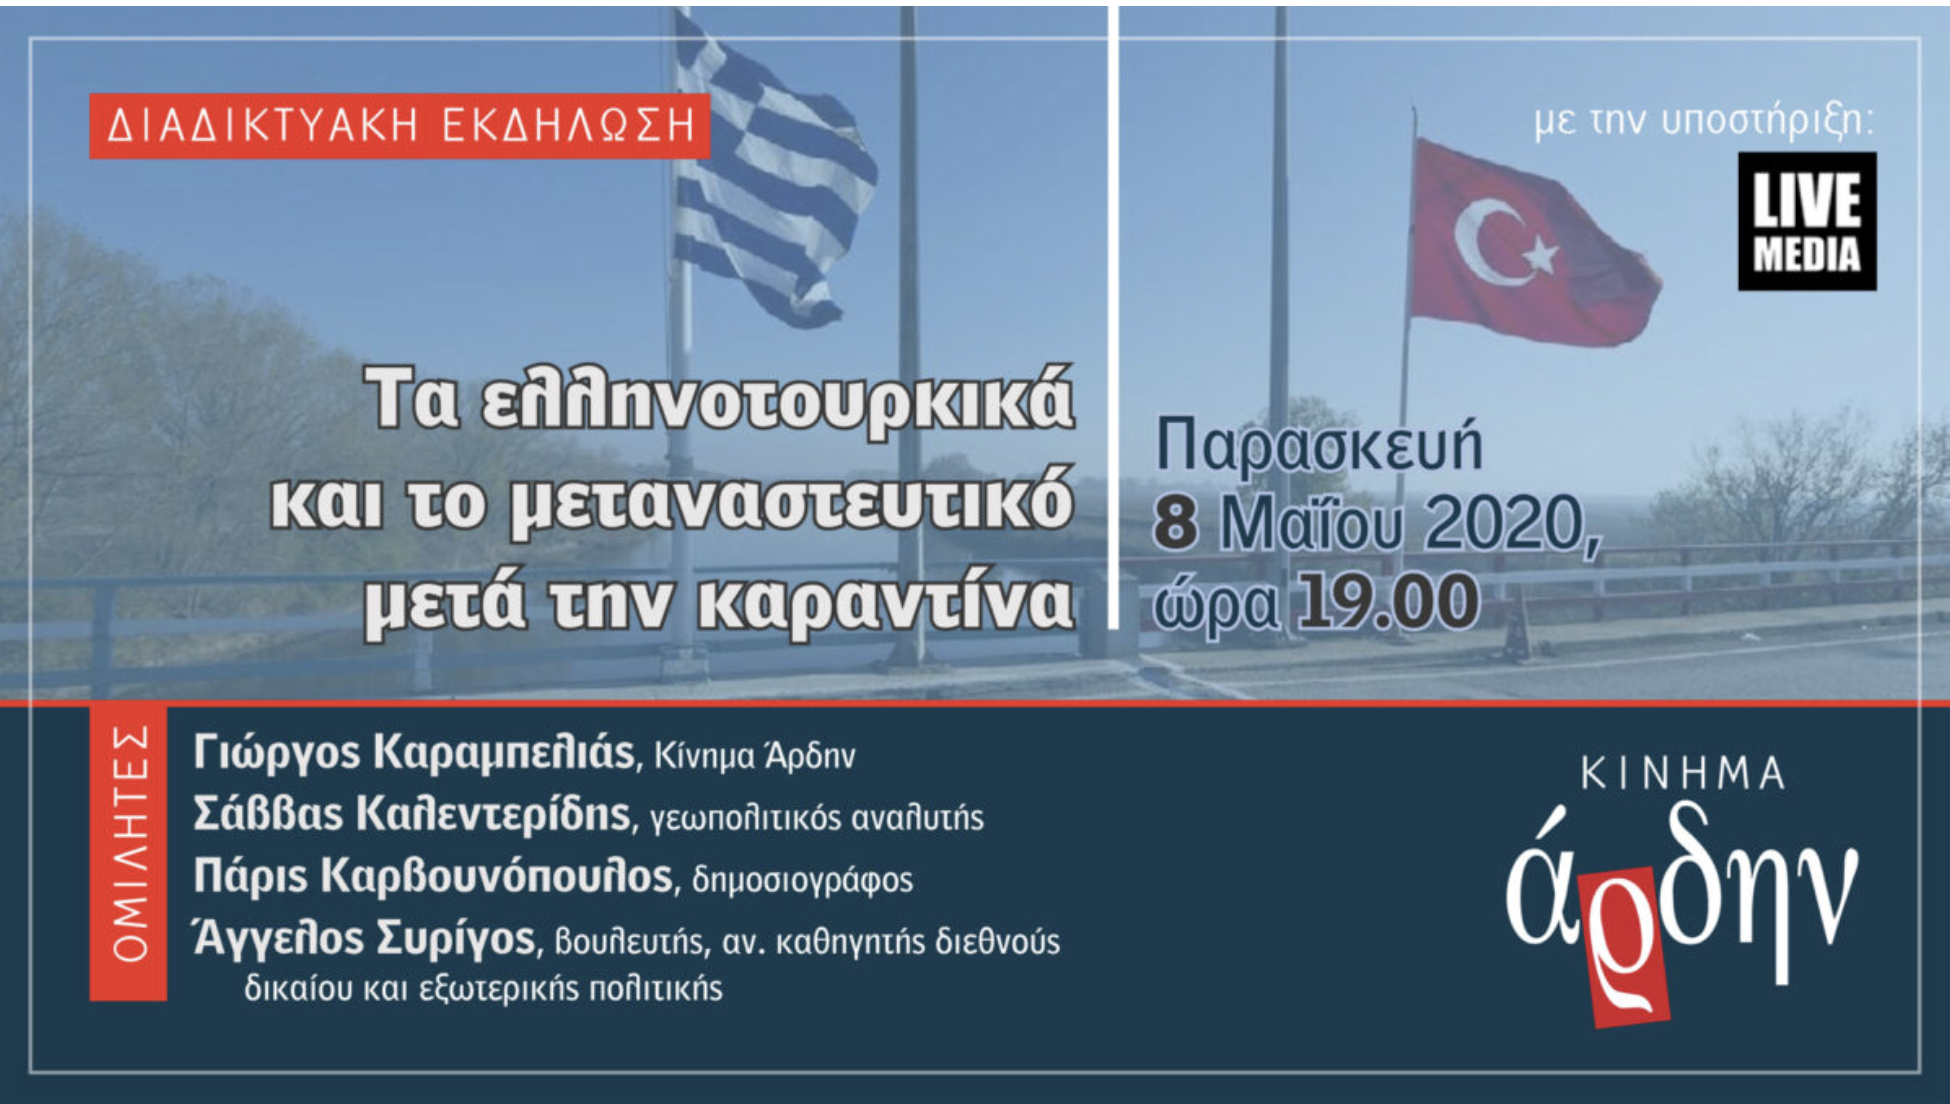 “Τα ελληνοτουρκικά και το μεταναστευτικό μετά την καραντίνα“- Διαδικτυακή εκδήλωση από το Άρδην